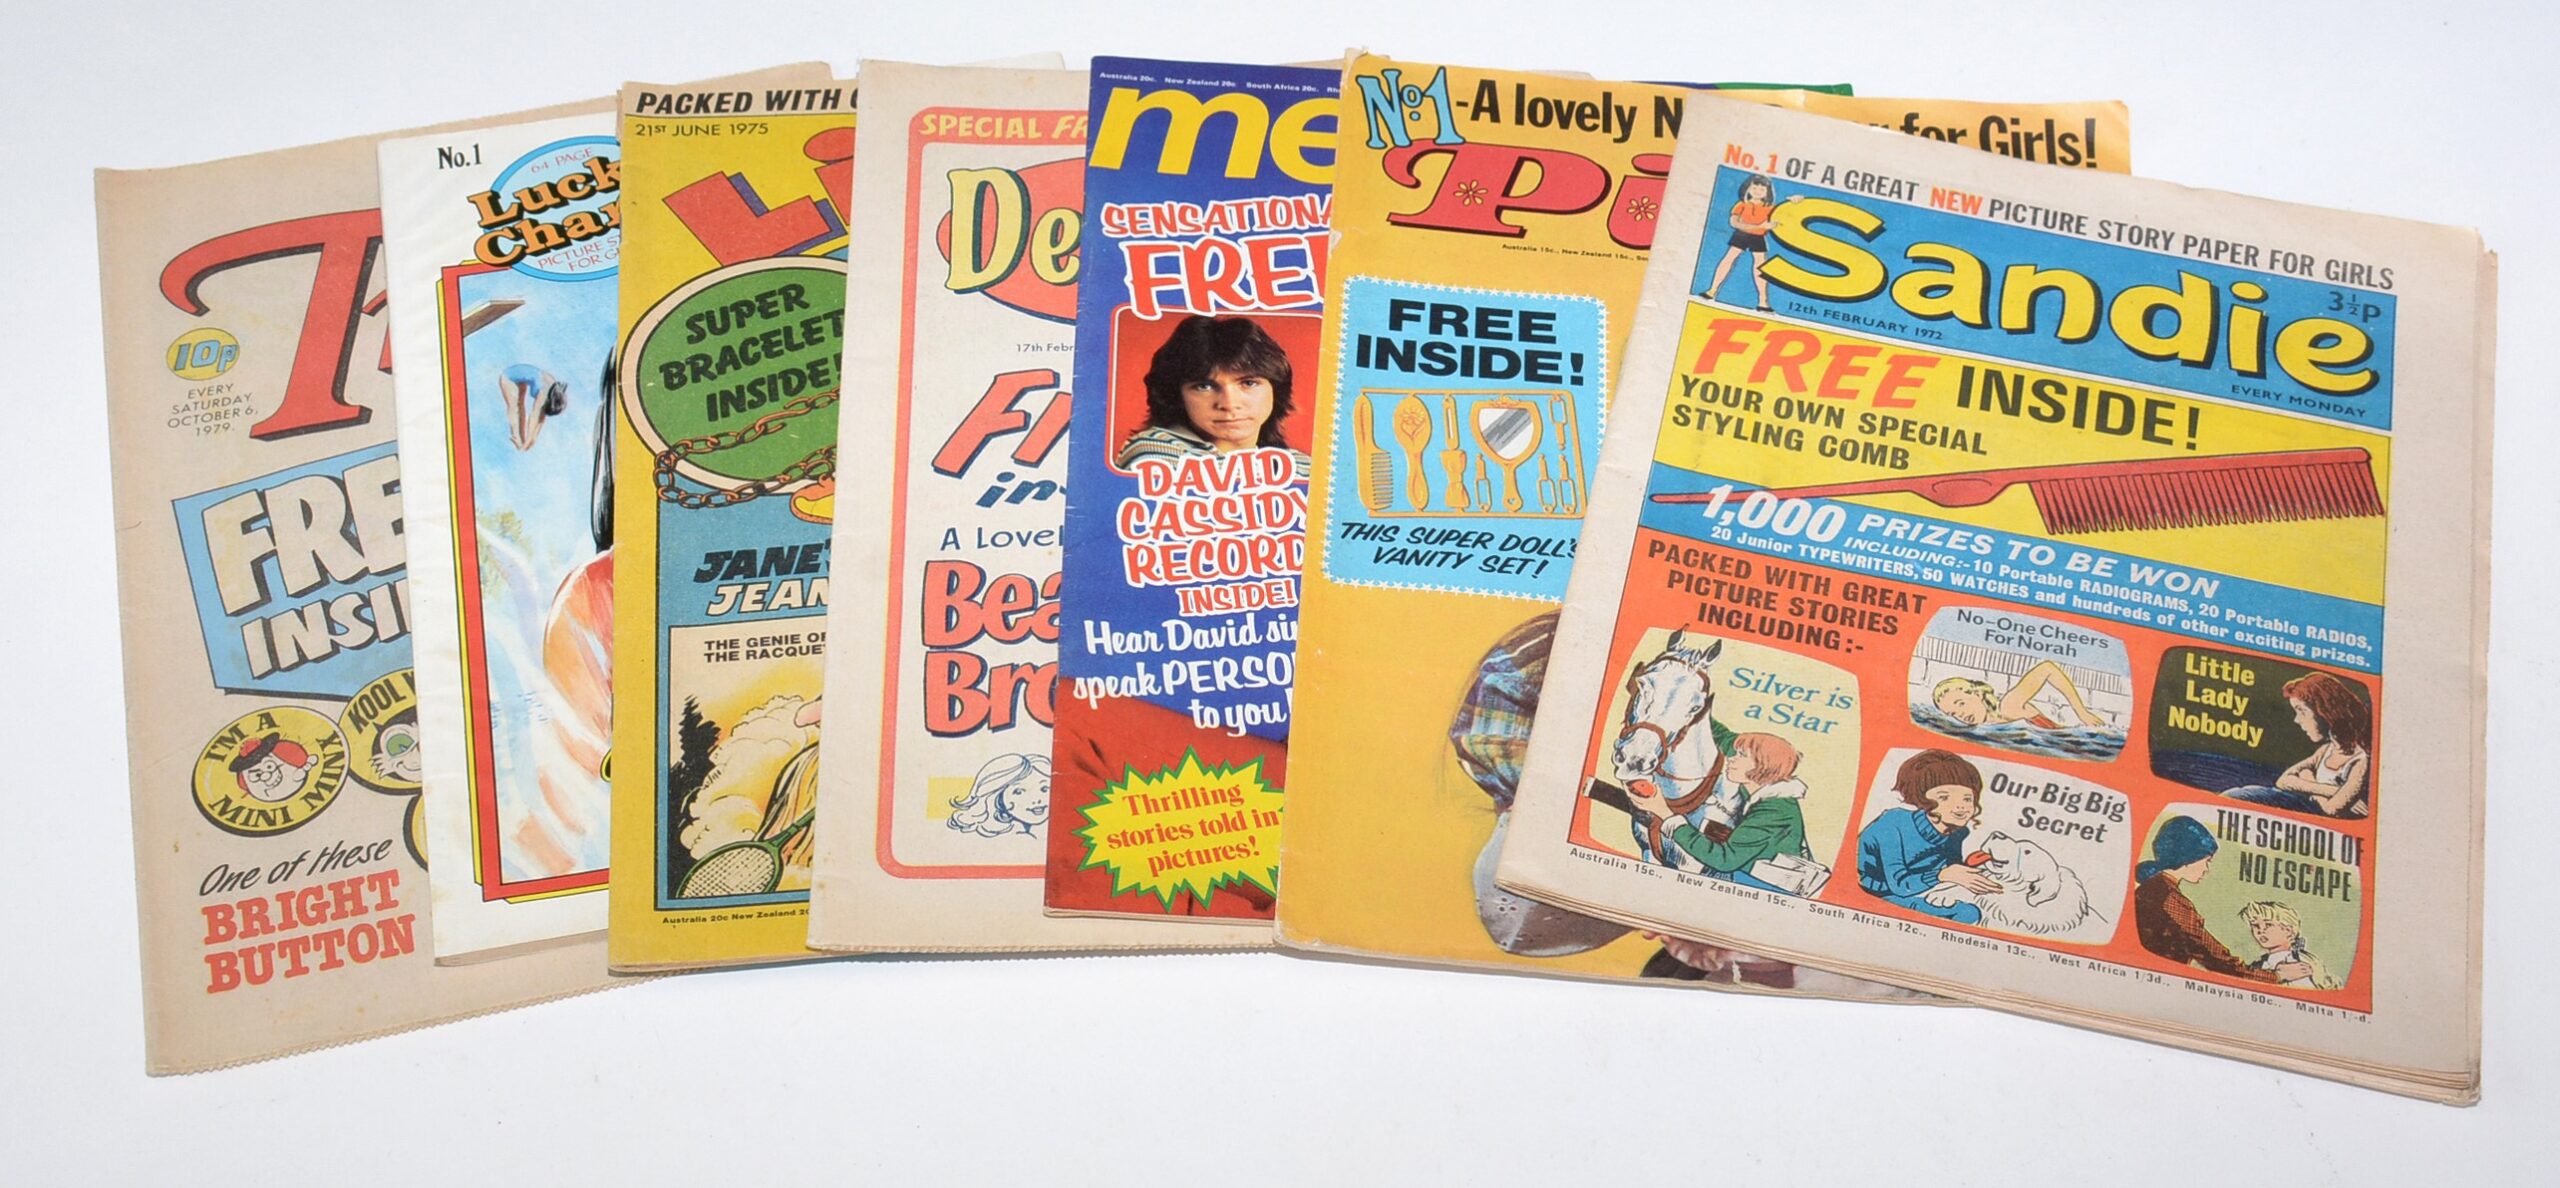 Sandie, No. 1 (1972); Pixie, No. 1 (1972); Melanie, No. 1 (1973); Debbie, No. 1 (1973); Lindy, No. 1 (1975); Valda, No. 1 (1979); and Tracy, No. (1979)